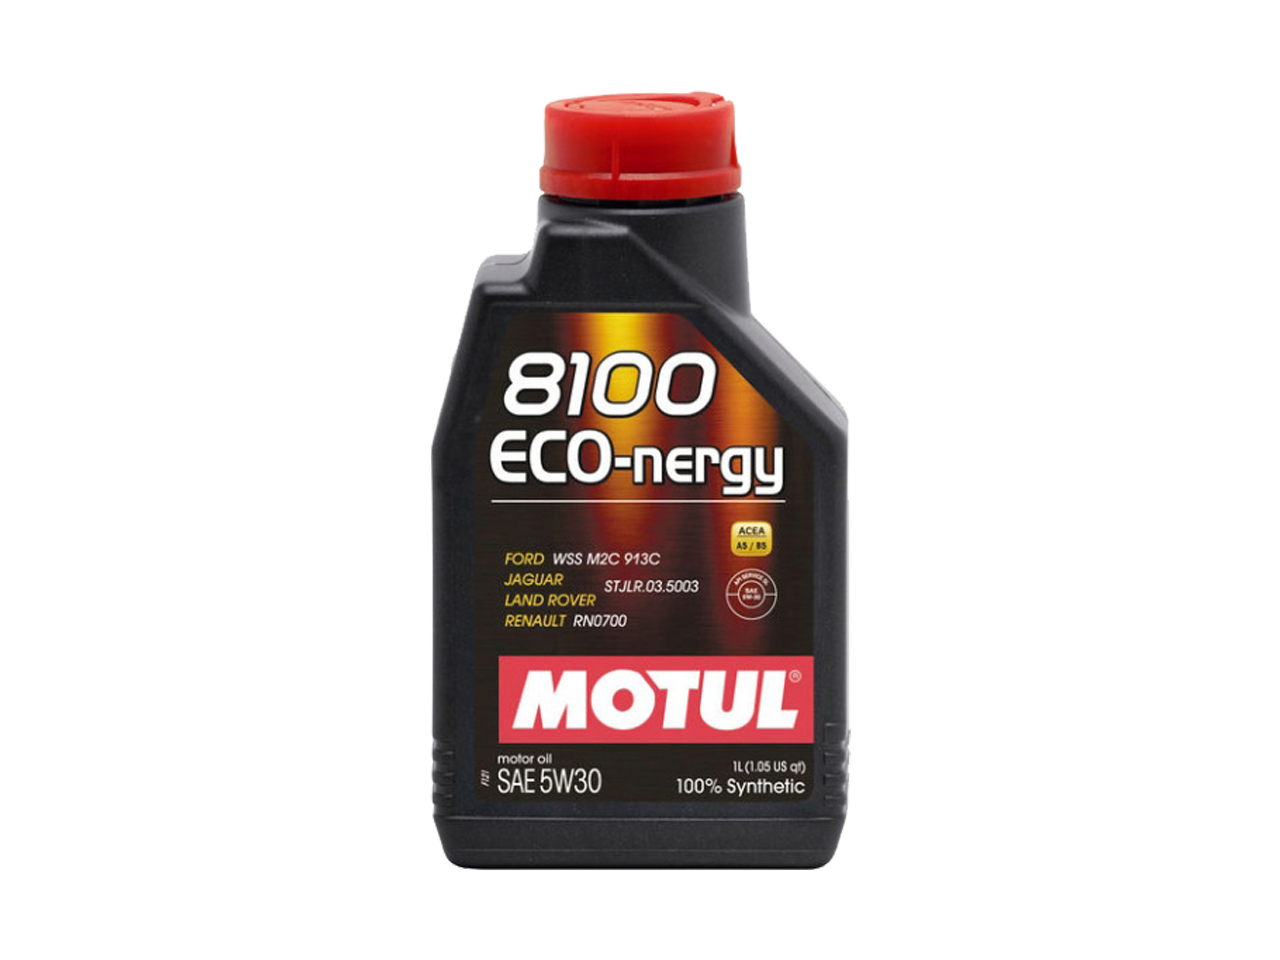 Купить недорого Моторное масло Motul 8100 ECO-nergy в Москве